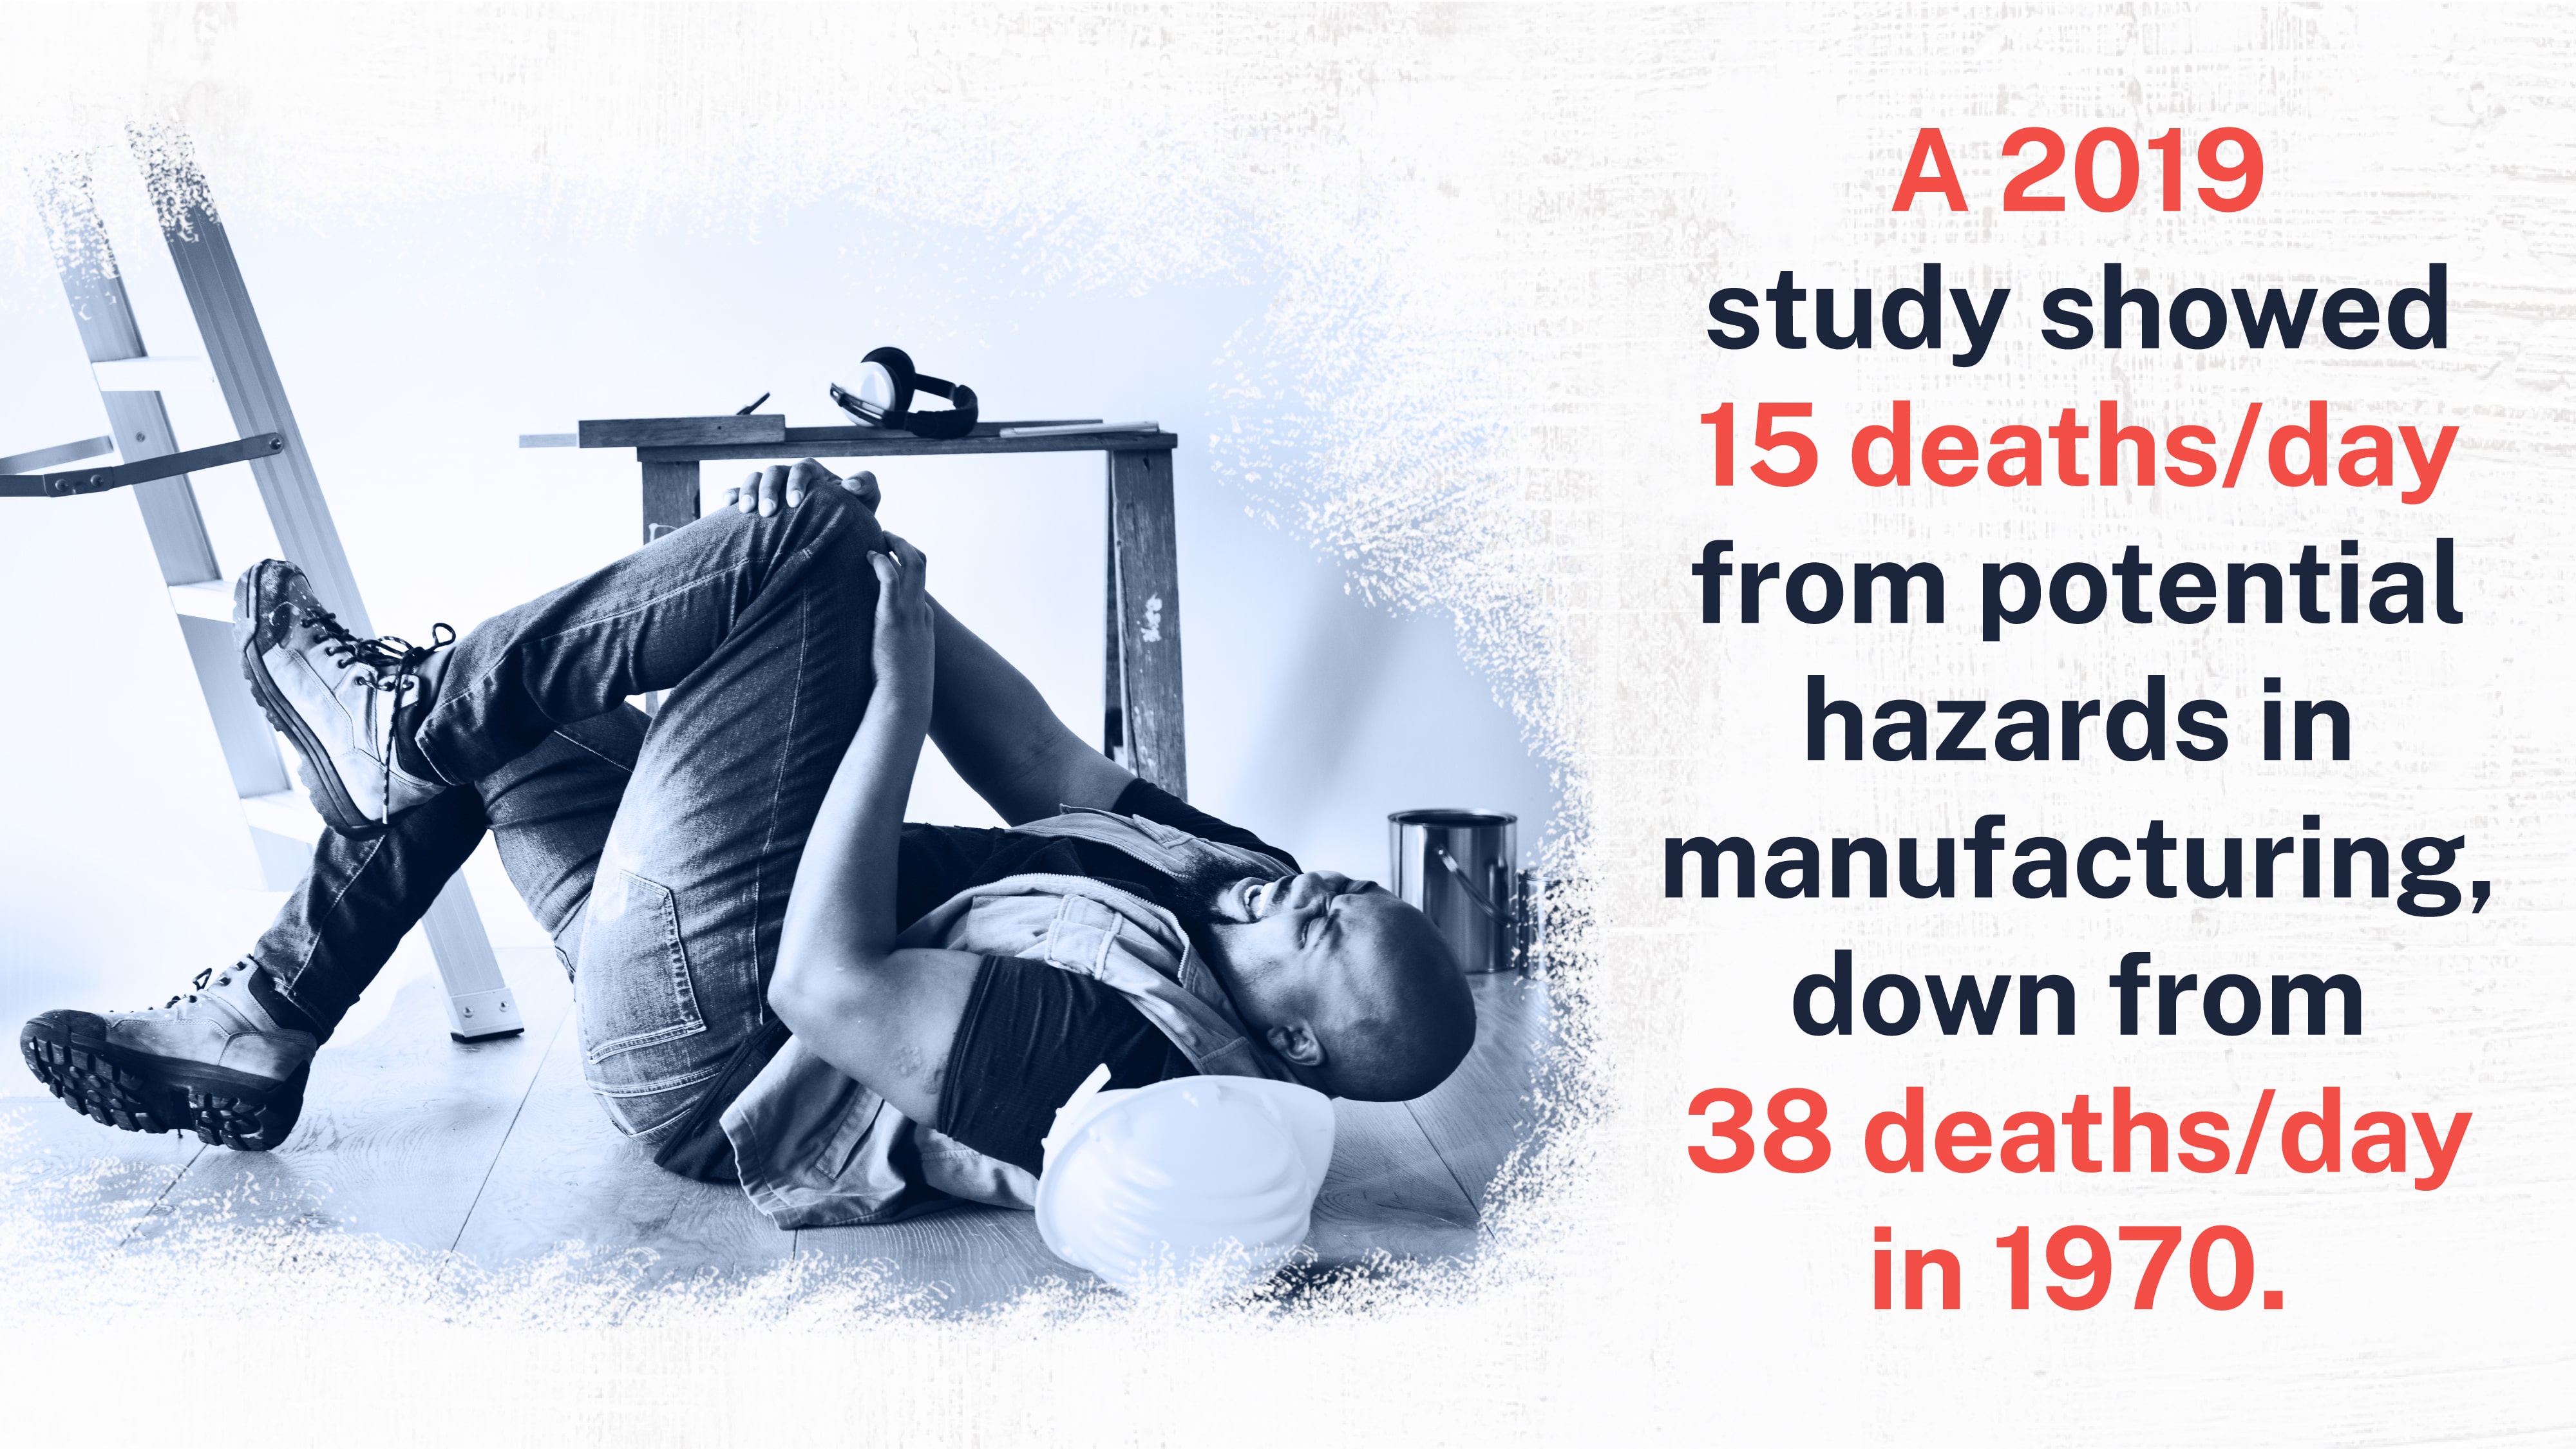 manufacturing hazards decrease